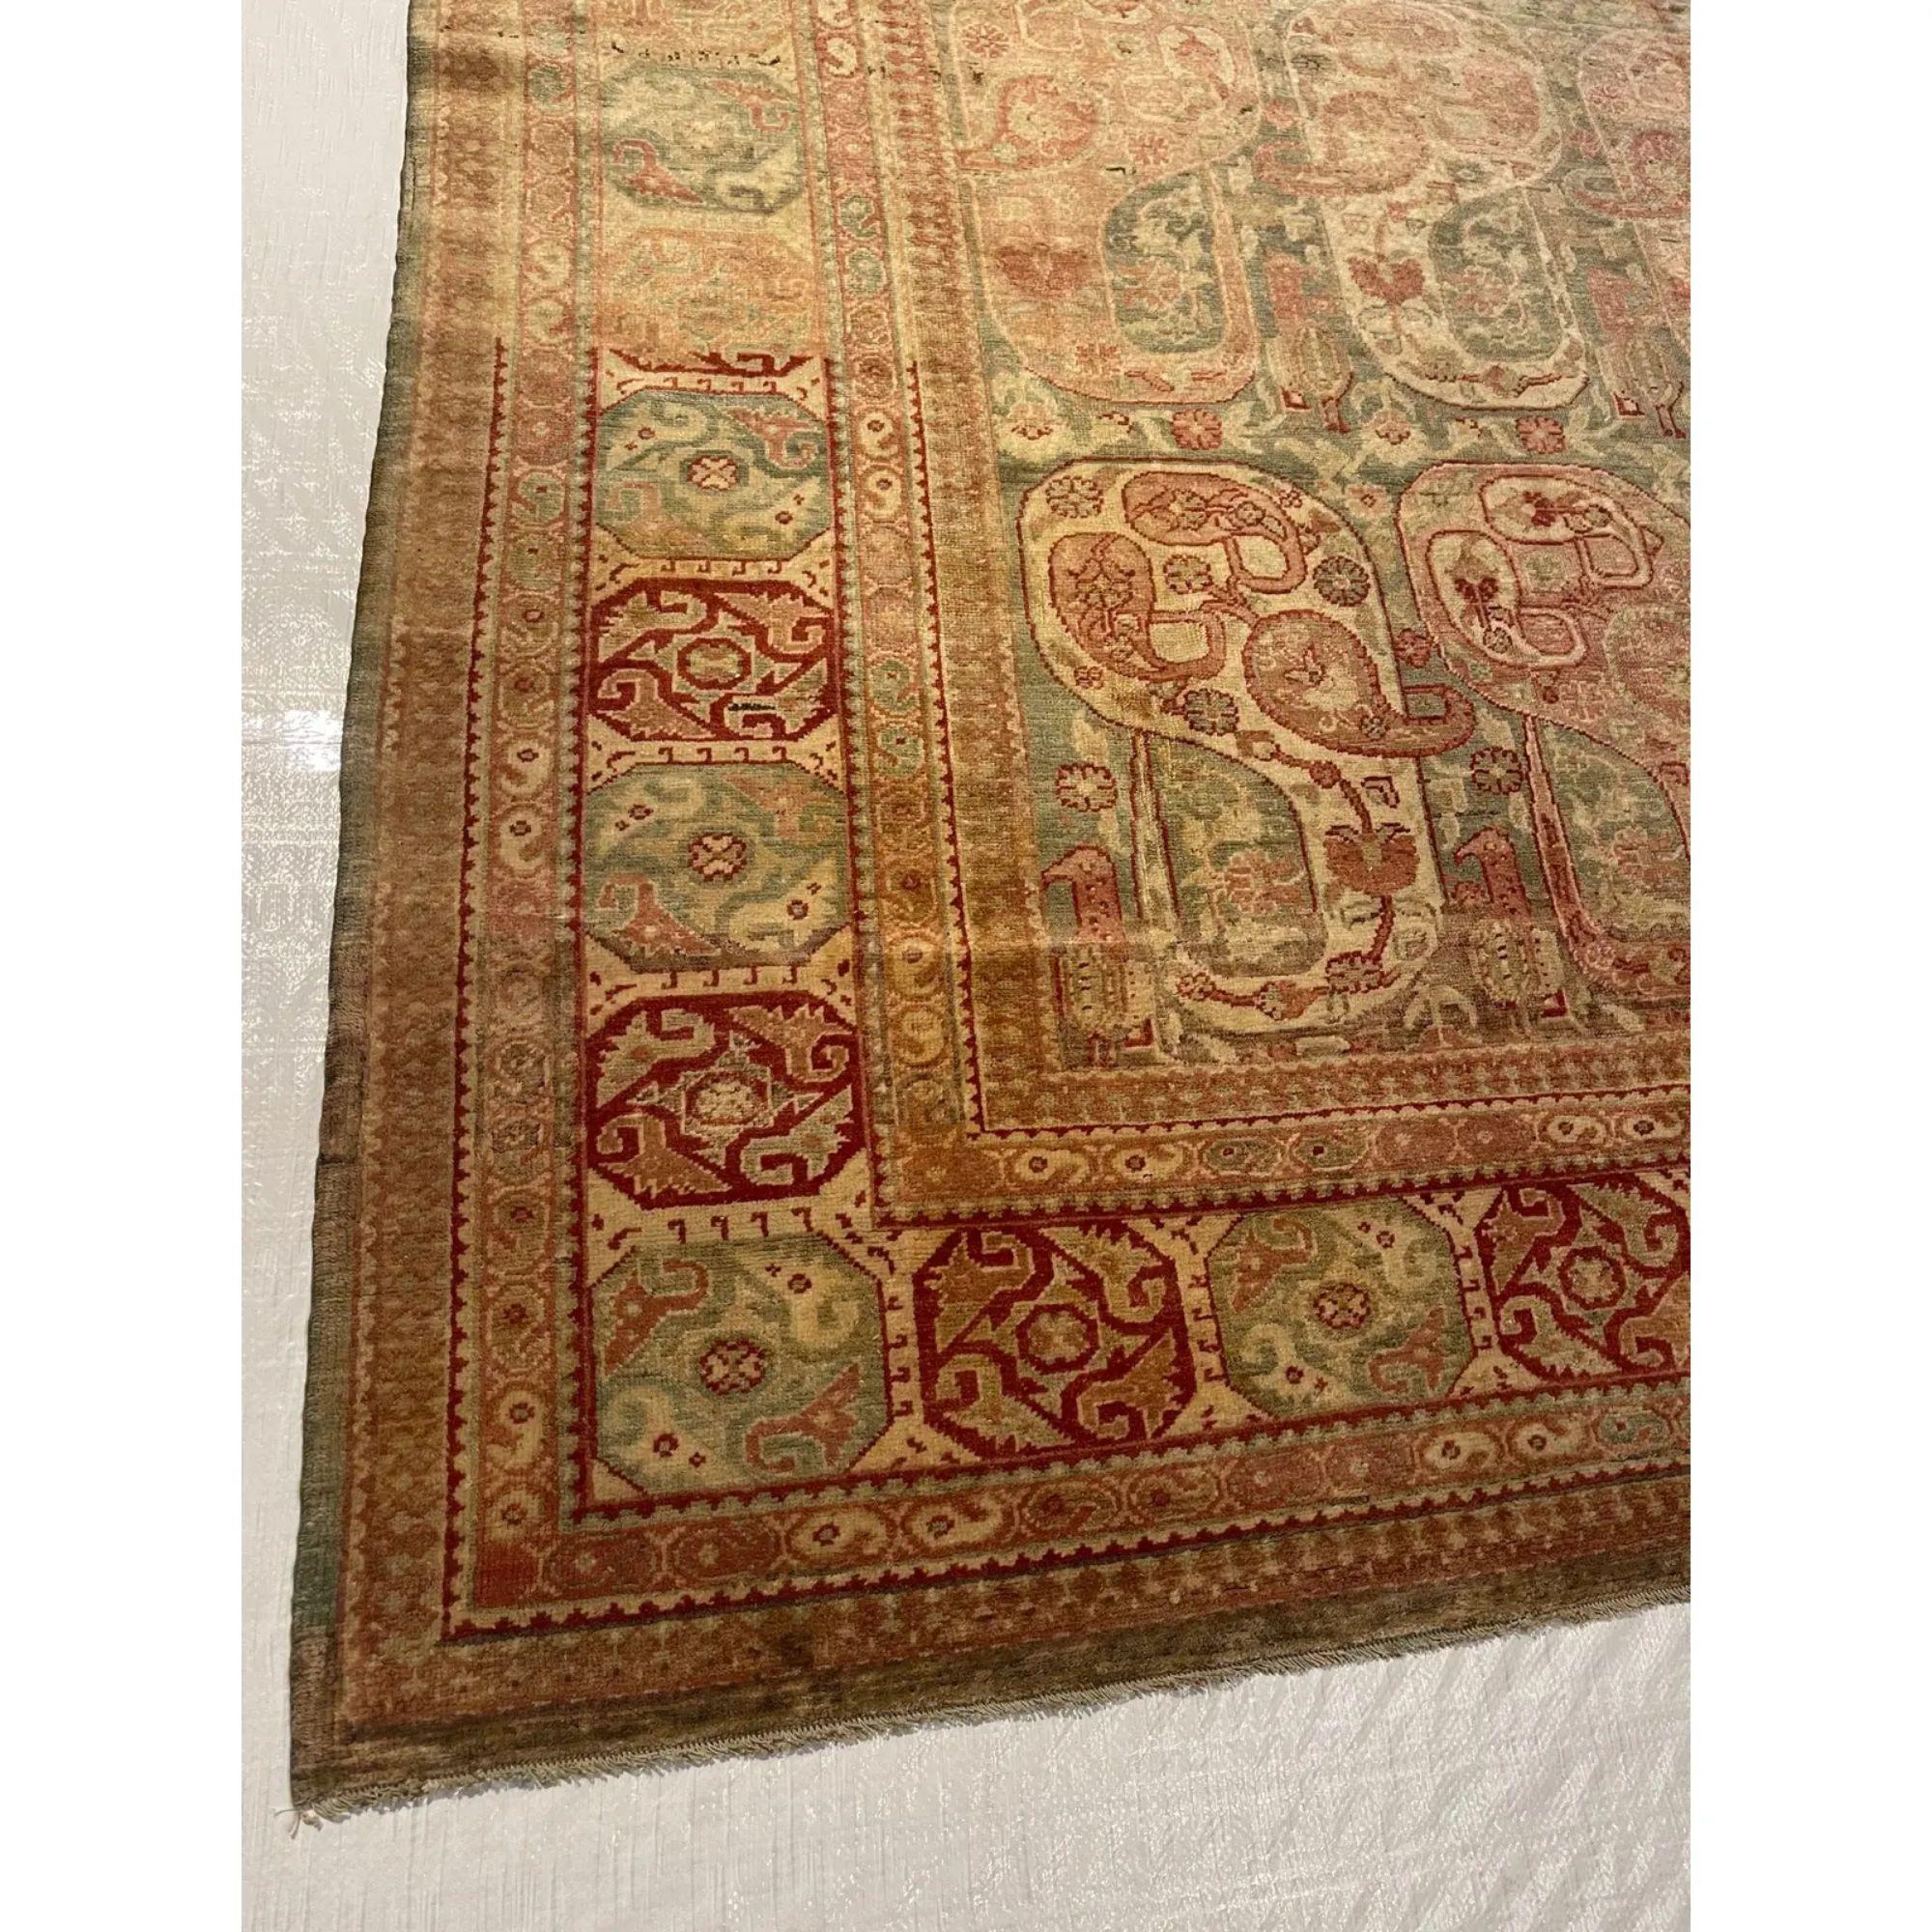 Tapis anciens Hereke - Les tapis Hereke représentent le summum de la finesse et de la délicatesse dans la production de tapis turcs anciens de la fin du XIXe siècle et du début du XXe siècle. Inspirés par les tapis de cour de l'Iran safavide et de